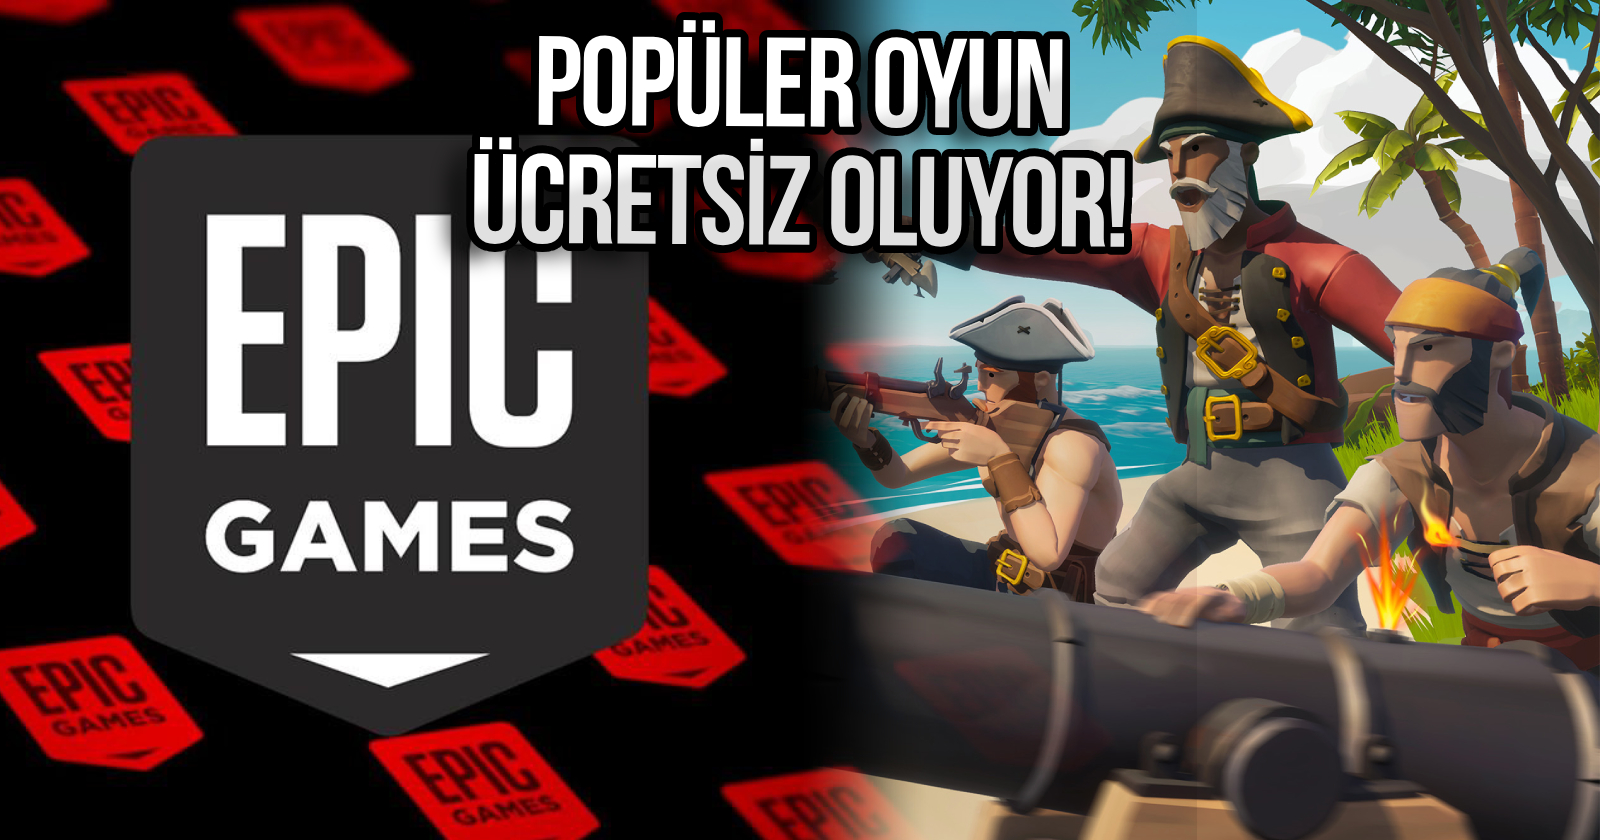 epic-games-blazing-sails-ucretsiz-oyun-dagitacak-KAPAK.jpg